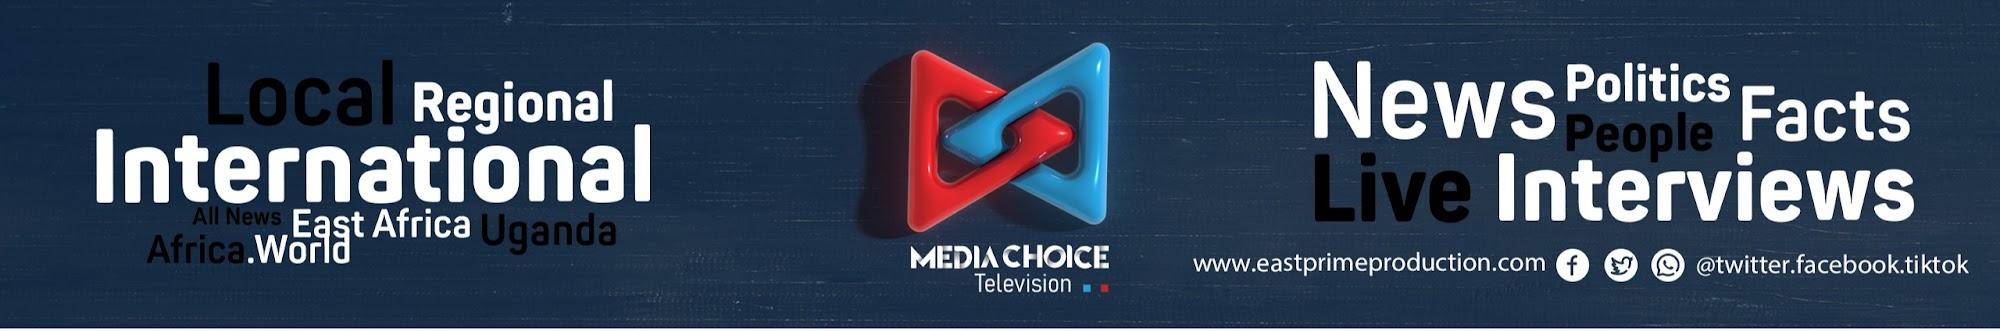 Media Choice Television